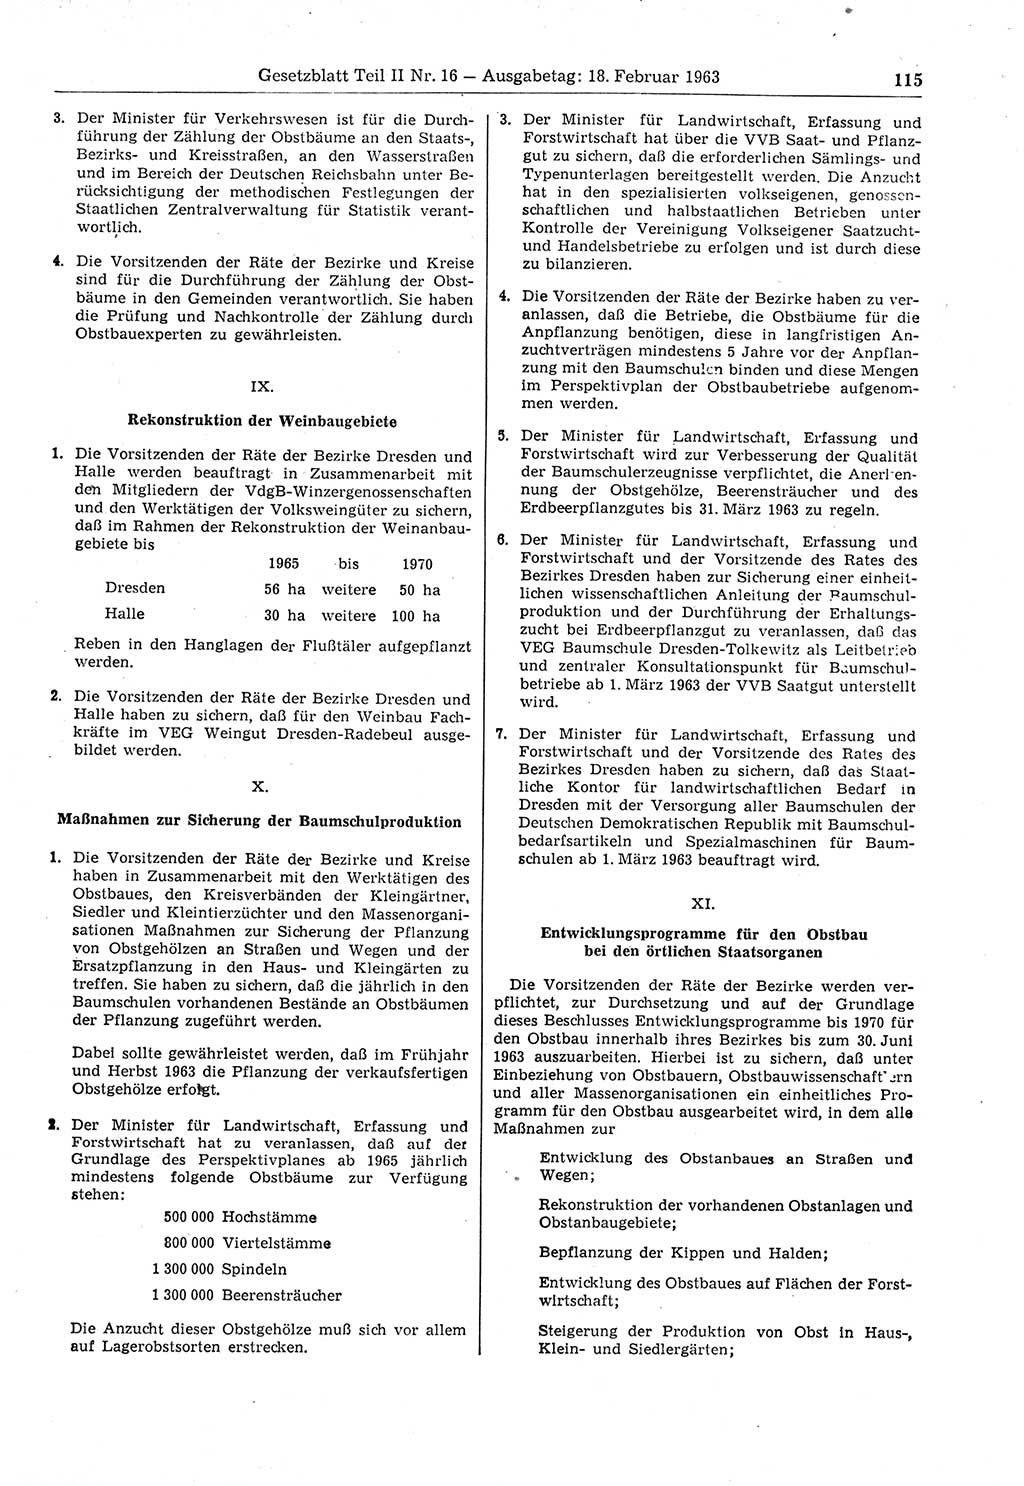 Gesetzblatt (GBl.) der Deutschen Demokratischen Republik (DDR) Teil ⅠⅠ 1963, Seite 115 (GBl. DDR ⅠⅠ 1963, S. 115)